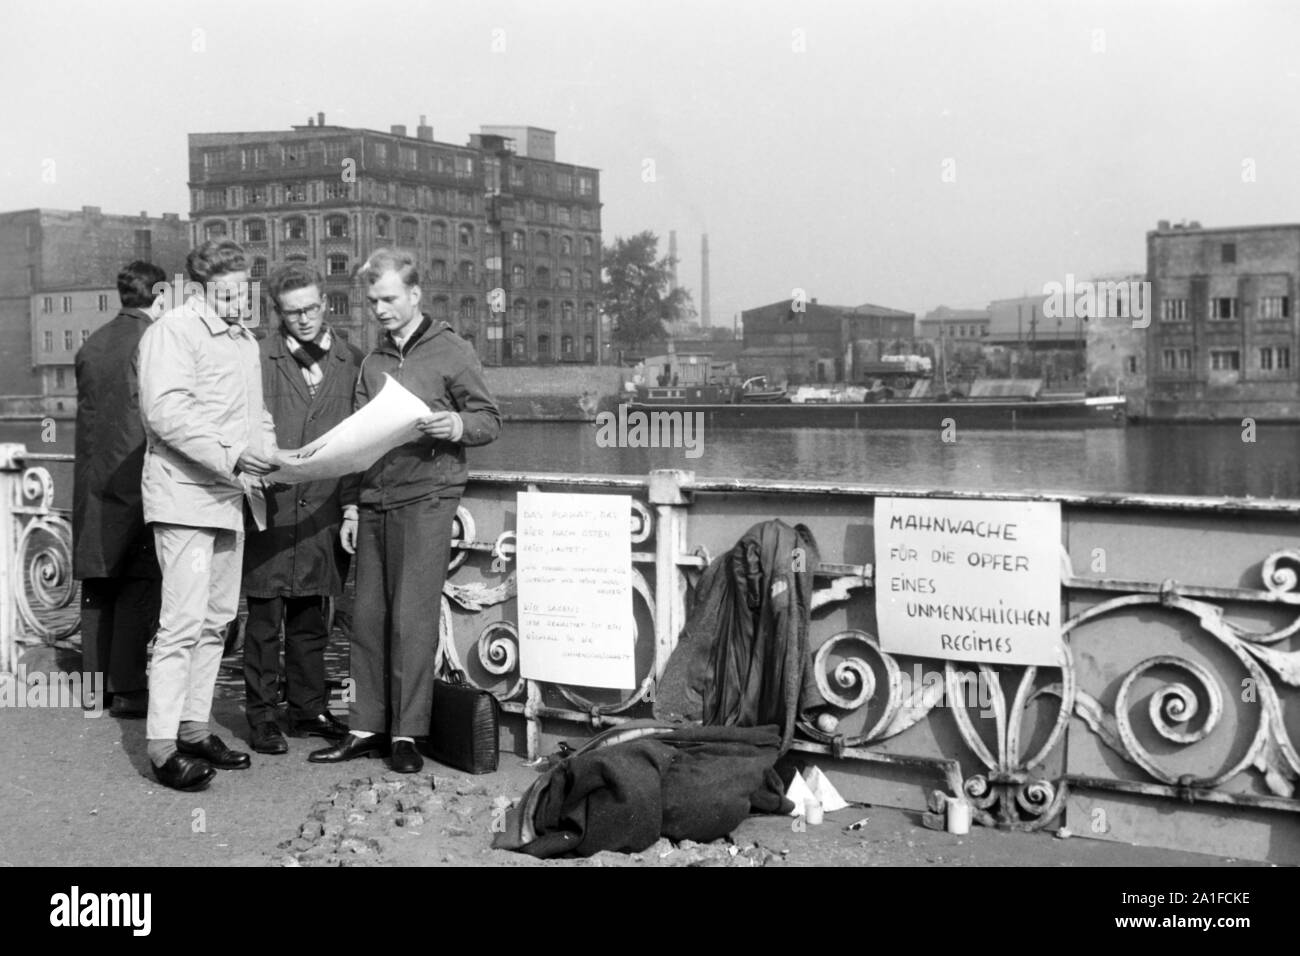 Mahnwache gegen das unmenschliche System der DDR am Kiehlufer in Berlin, Deutschland 1962. Pciekt against the inuman GDR system at Kiehlufer street in Berlin, Germany 1962. Stock Photo